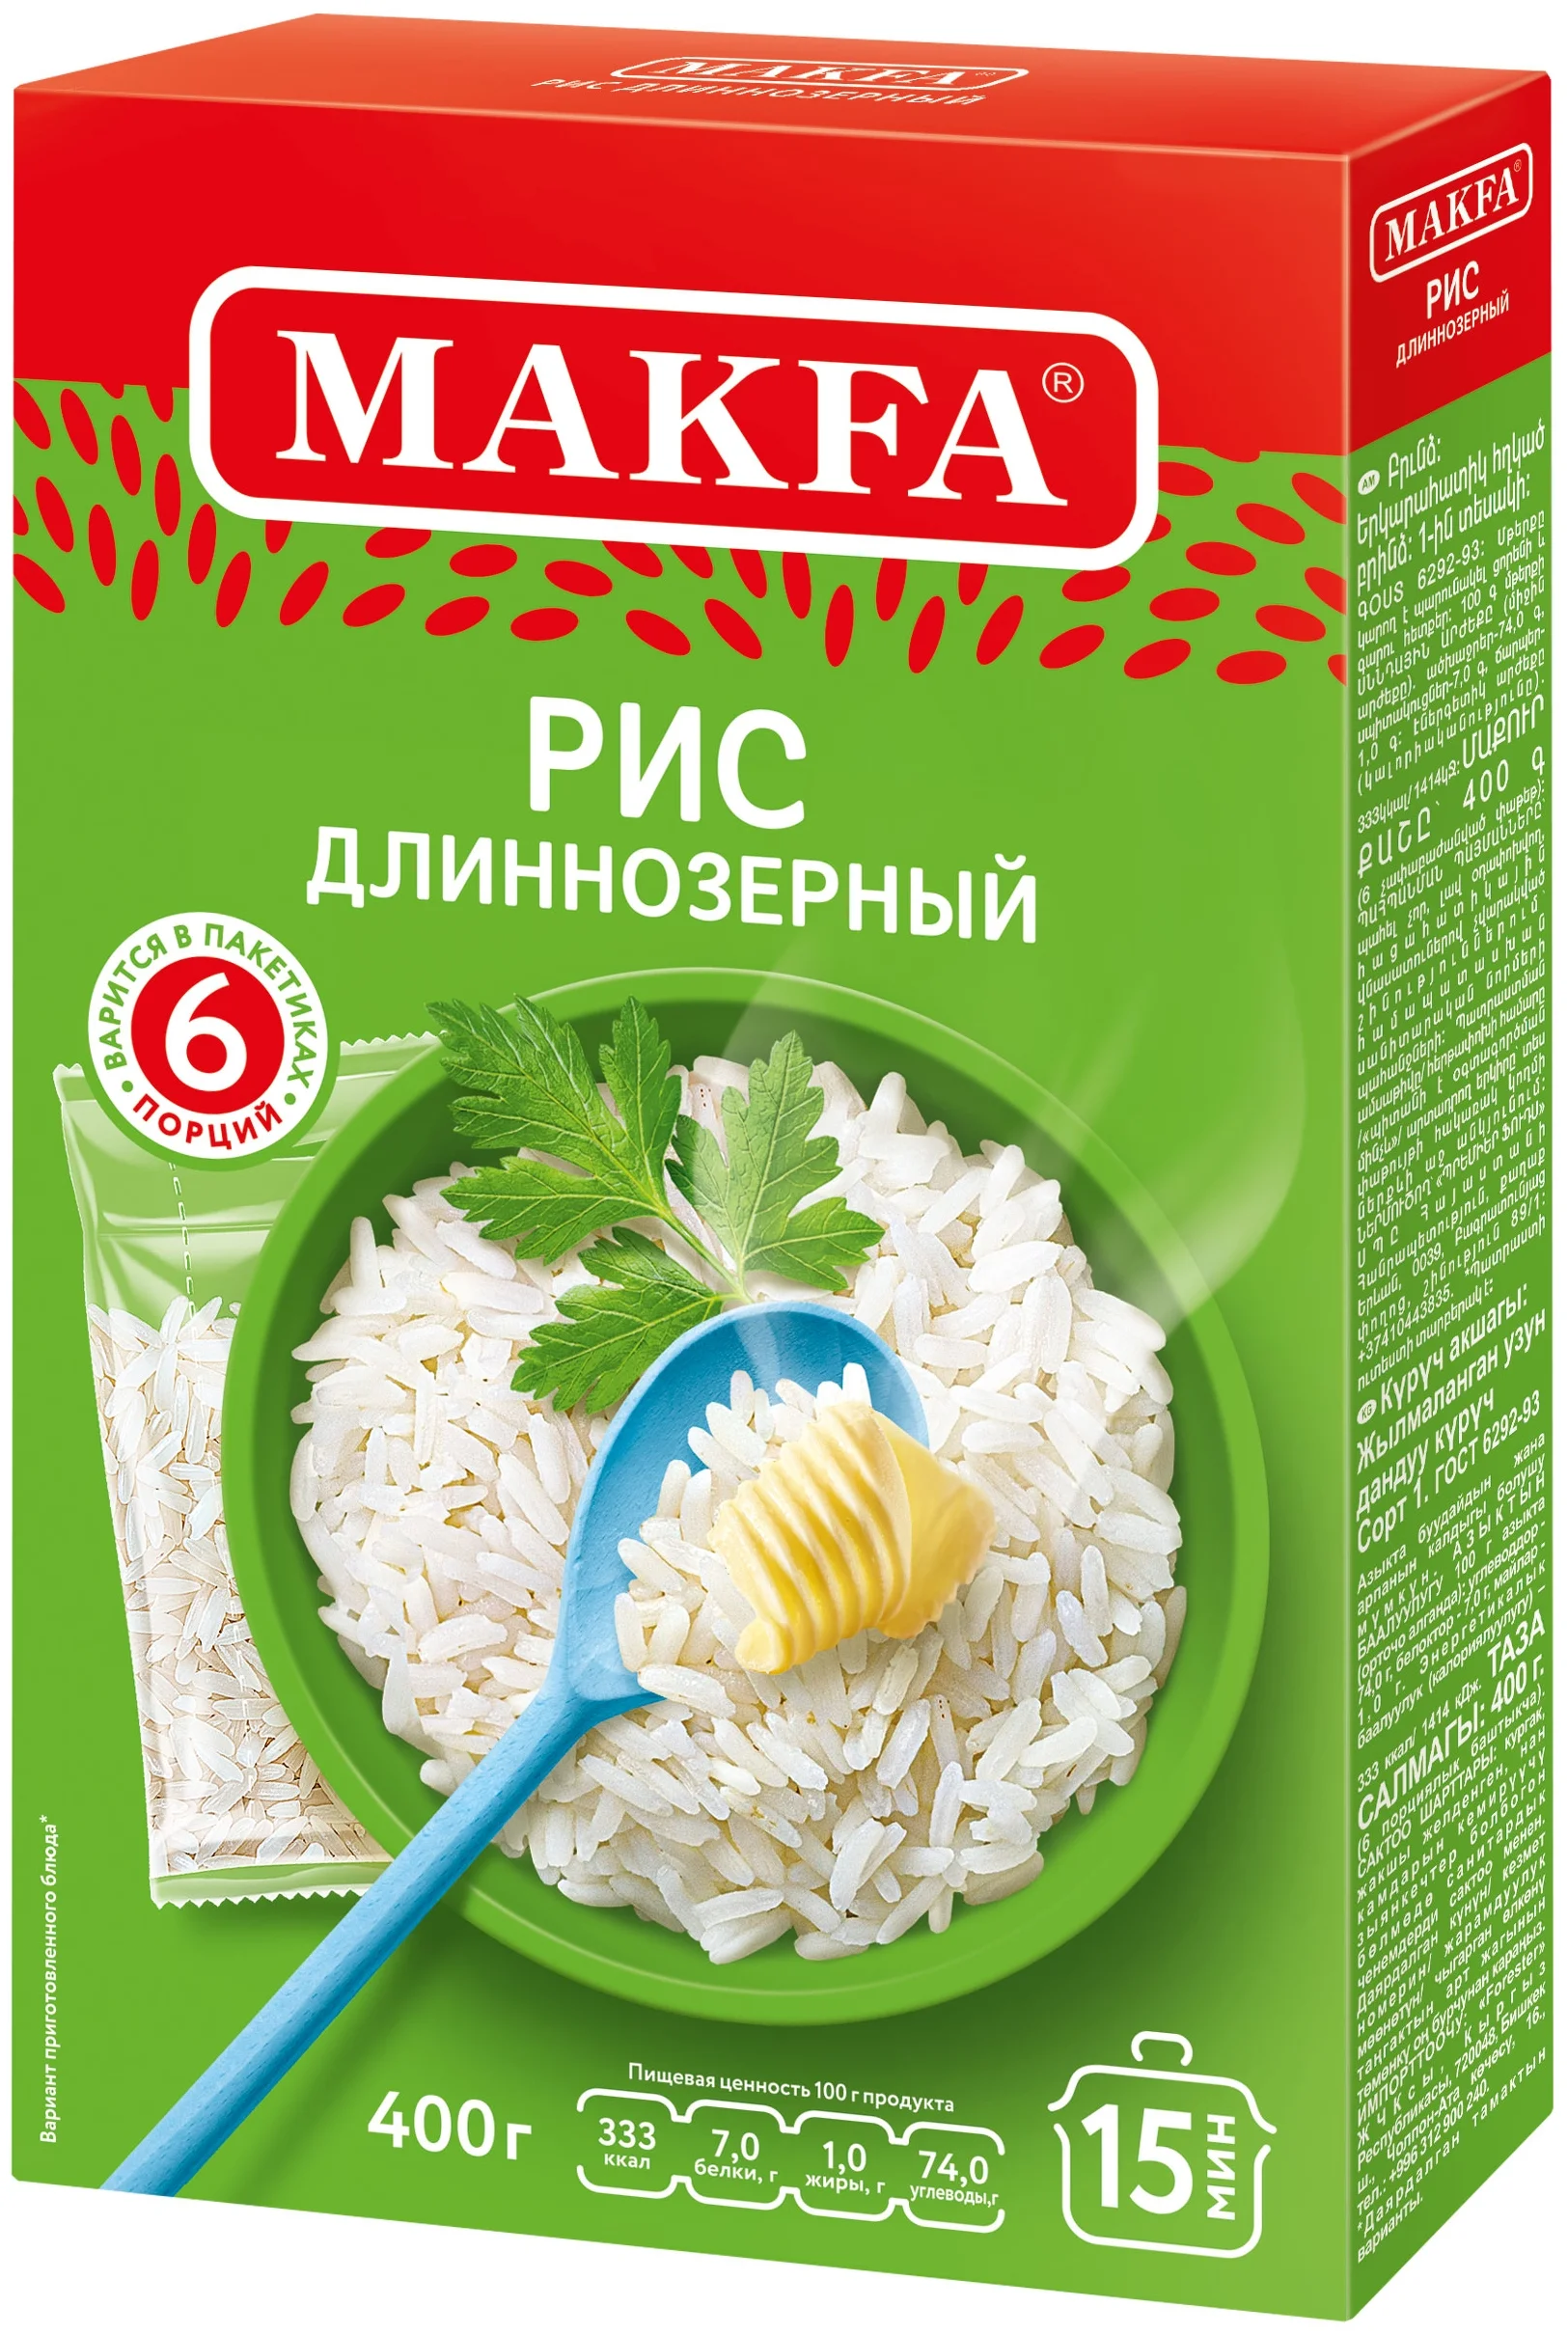 MAKFA, Рис длиннозерный в варочных пакетах, 400 гр